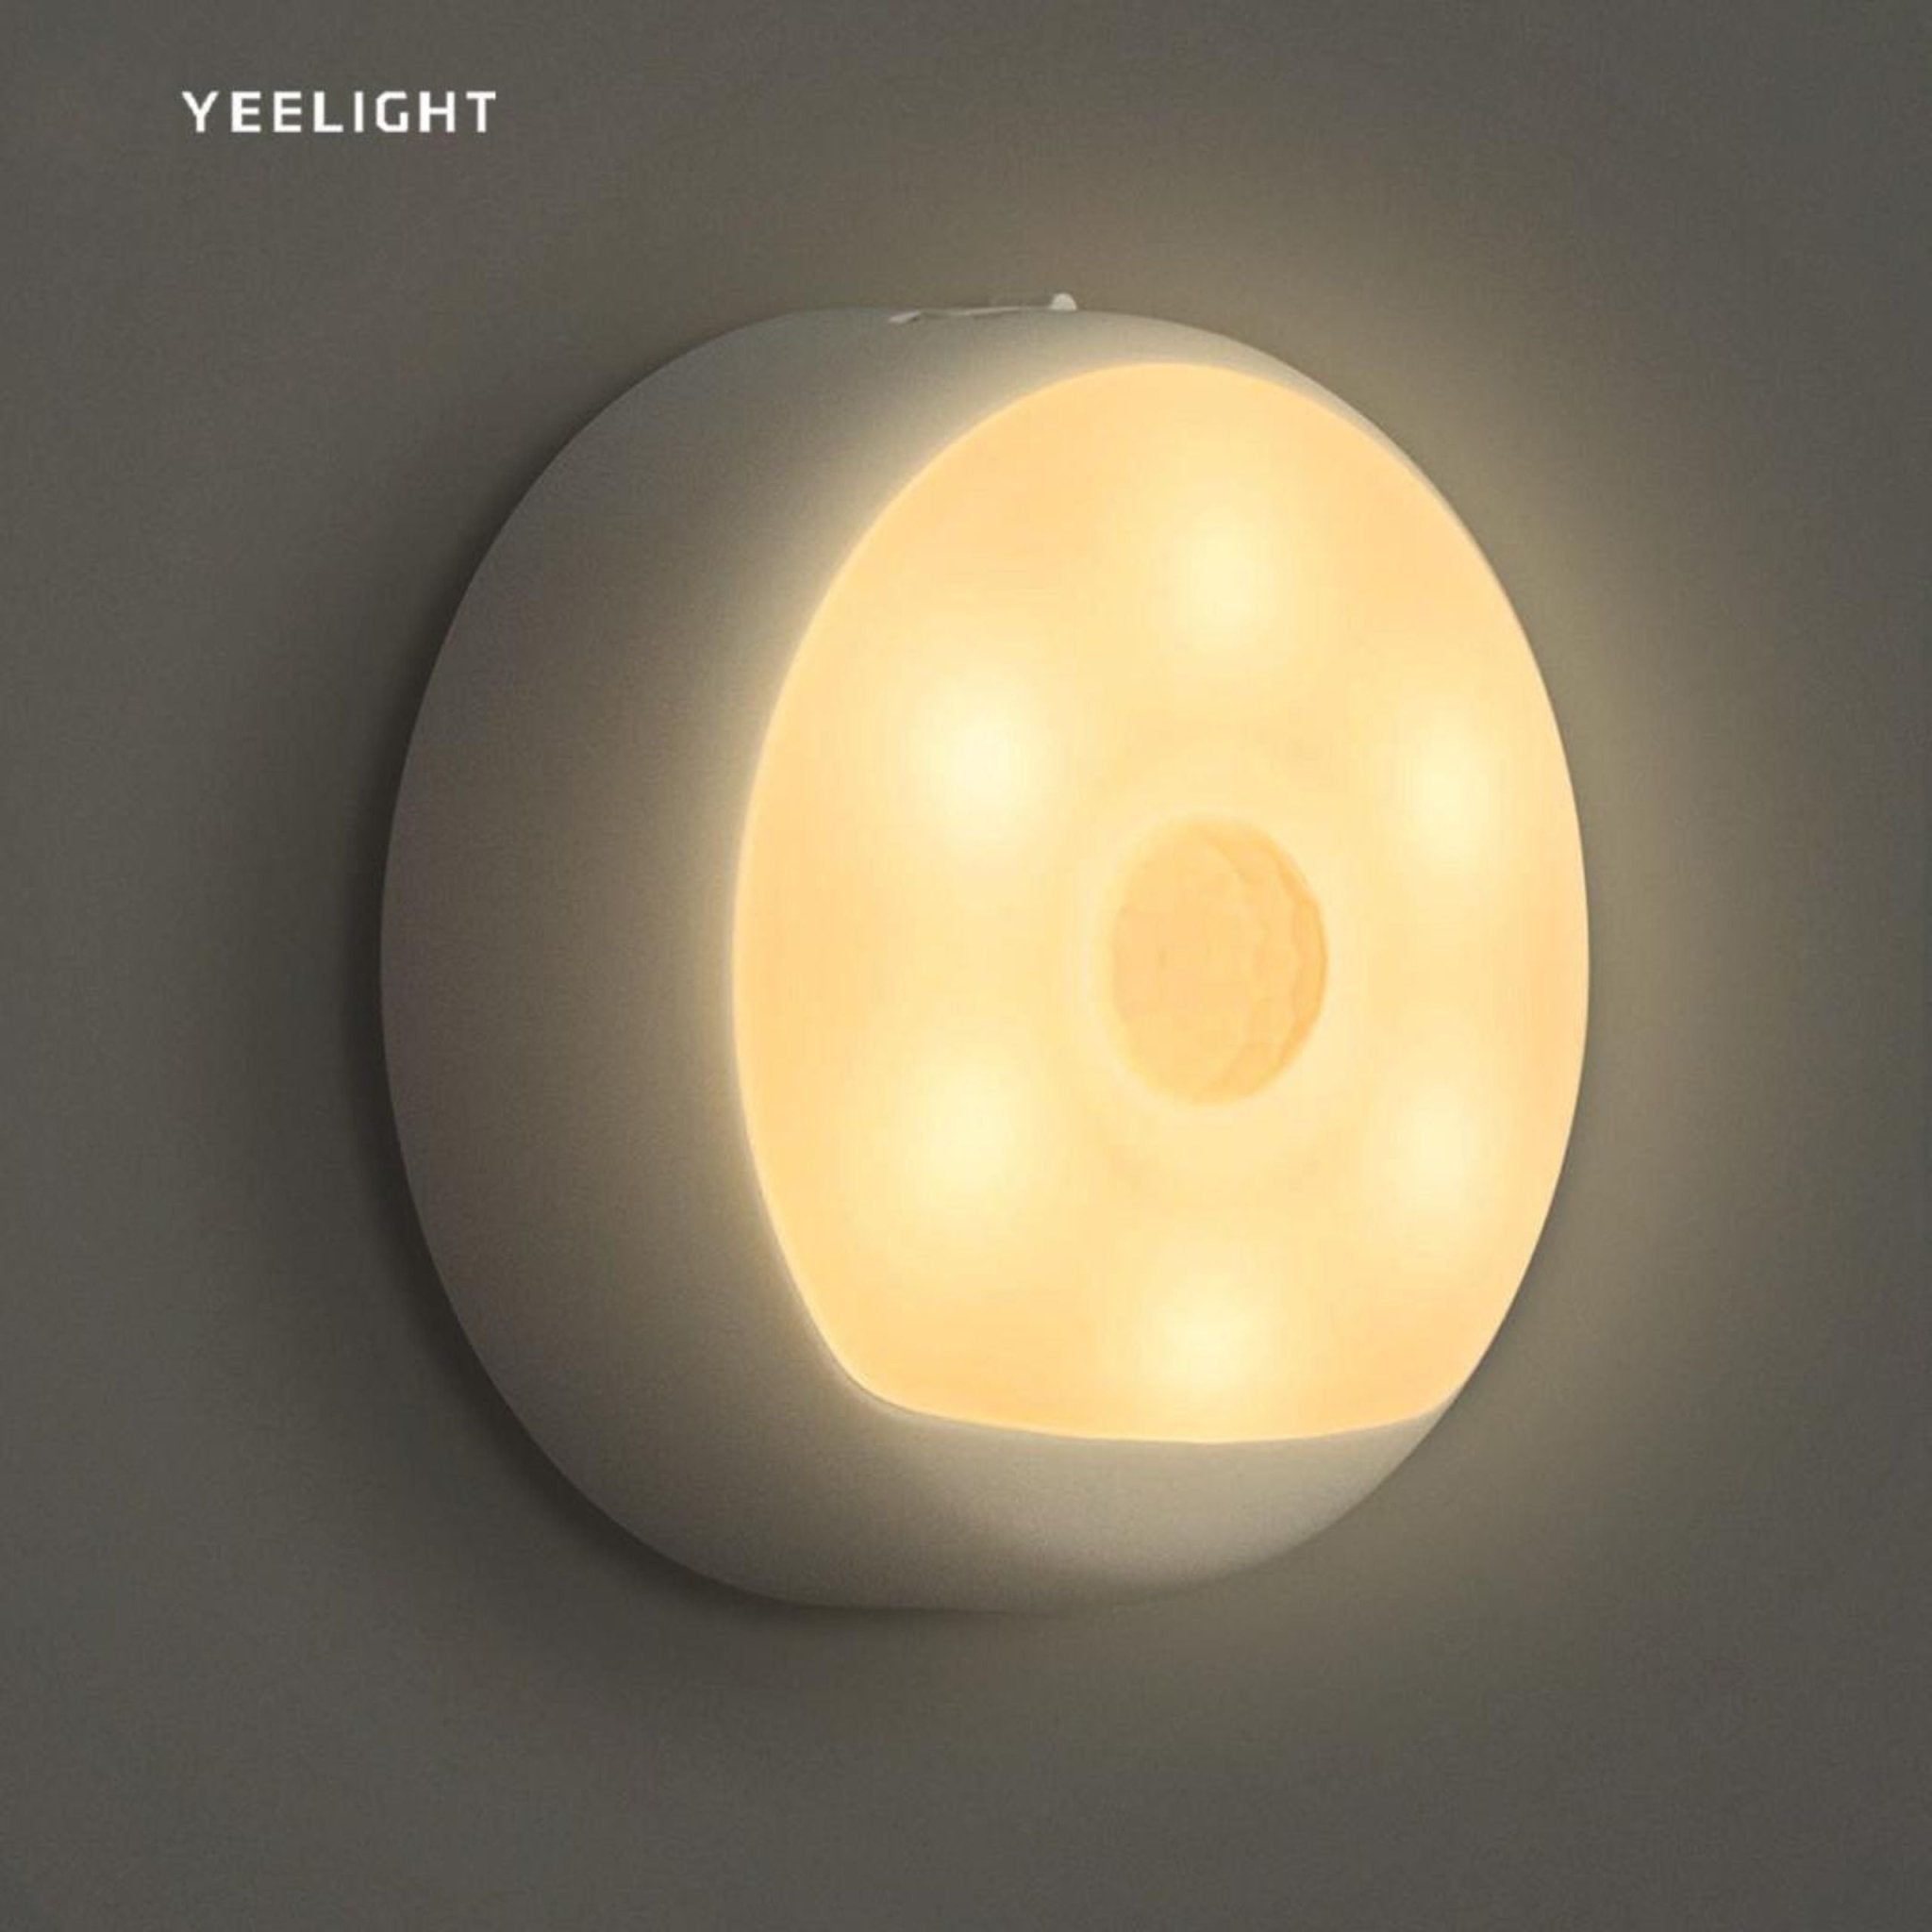 MI - Yeelight Motion Sensor Night Light